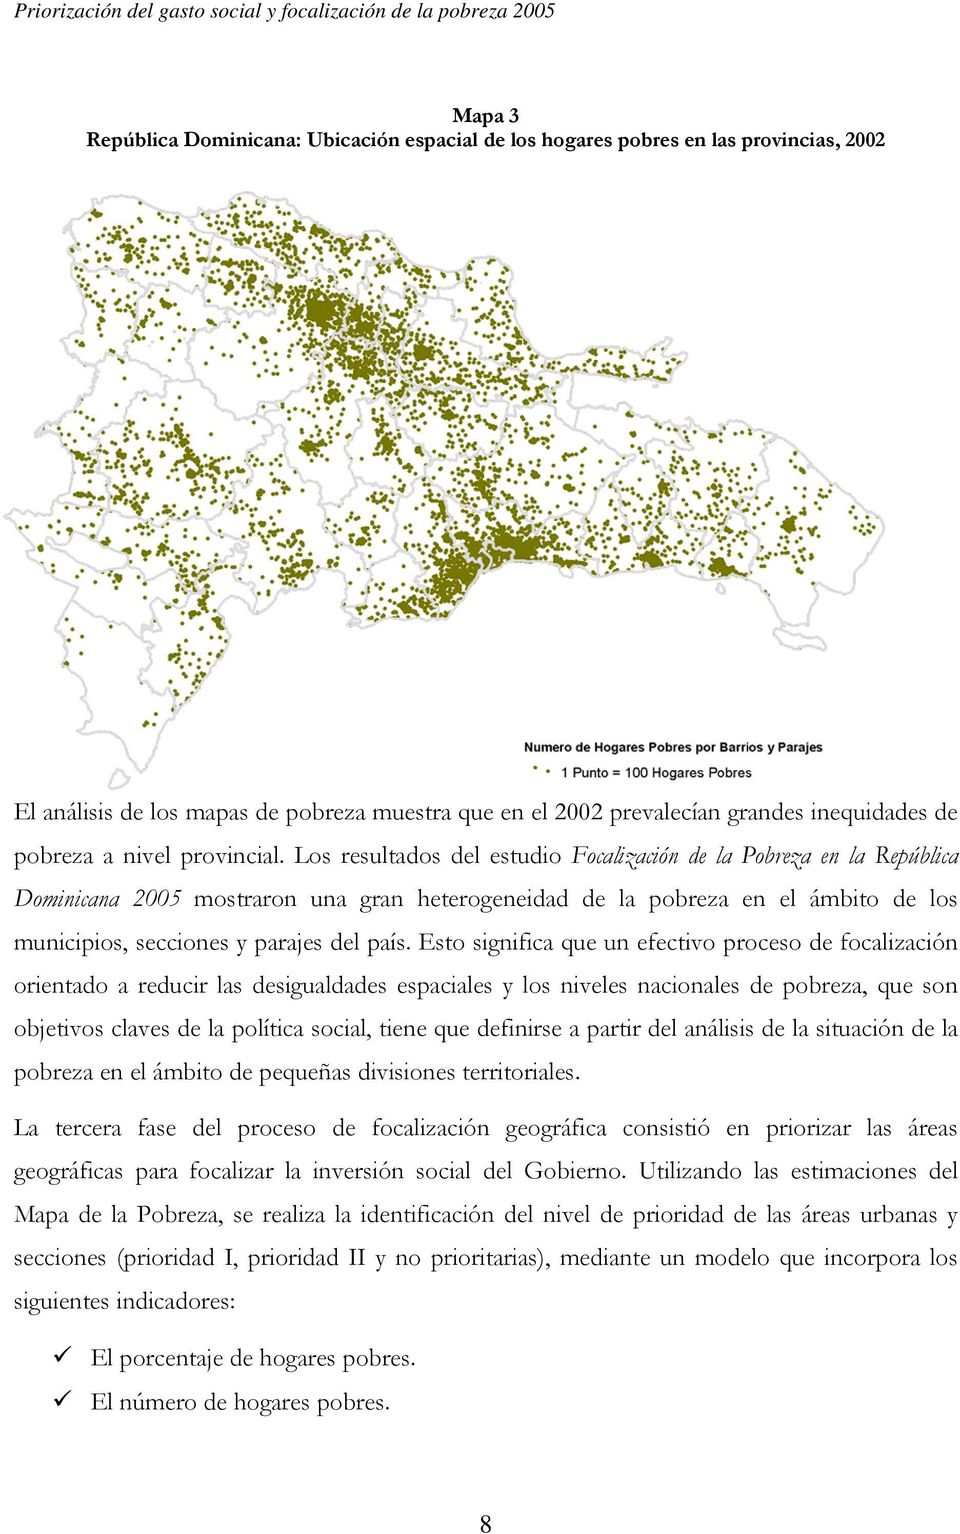 Los resultados del estudio Focalización de la Pobreza en la República Dominicana 2005 mostraron una gran heterogeneidad de la pobreza en el ámbito de los municipios, secciones y parajes del país.